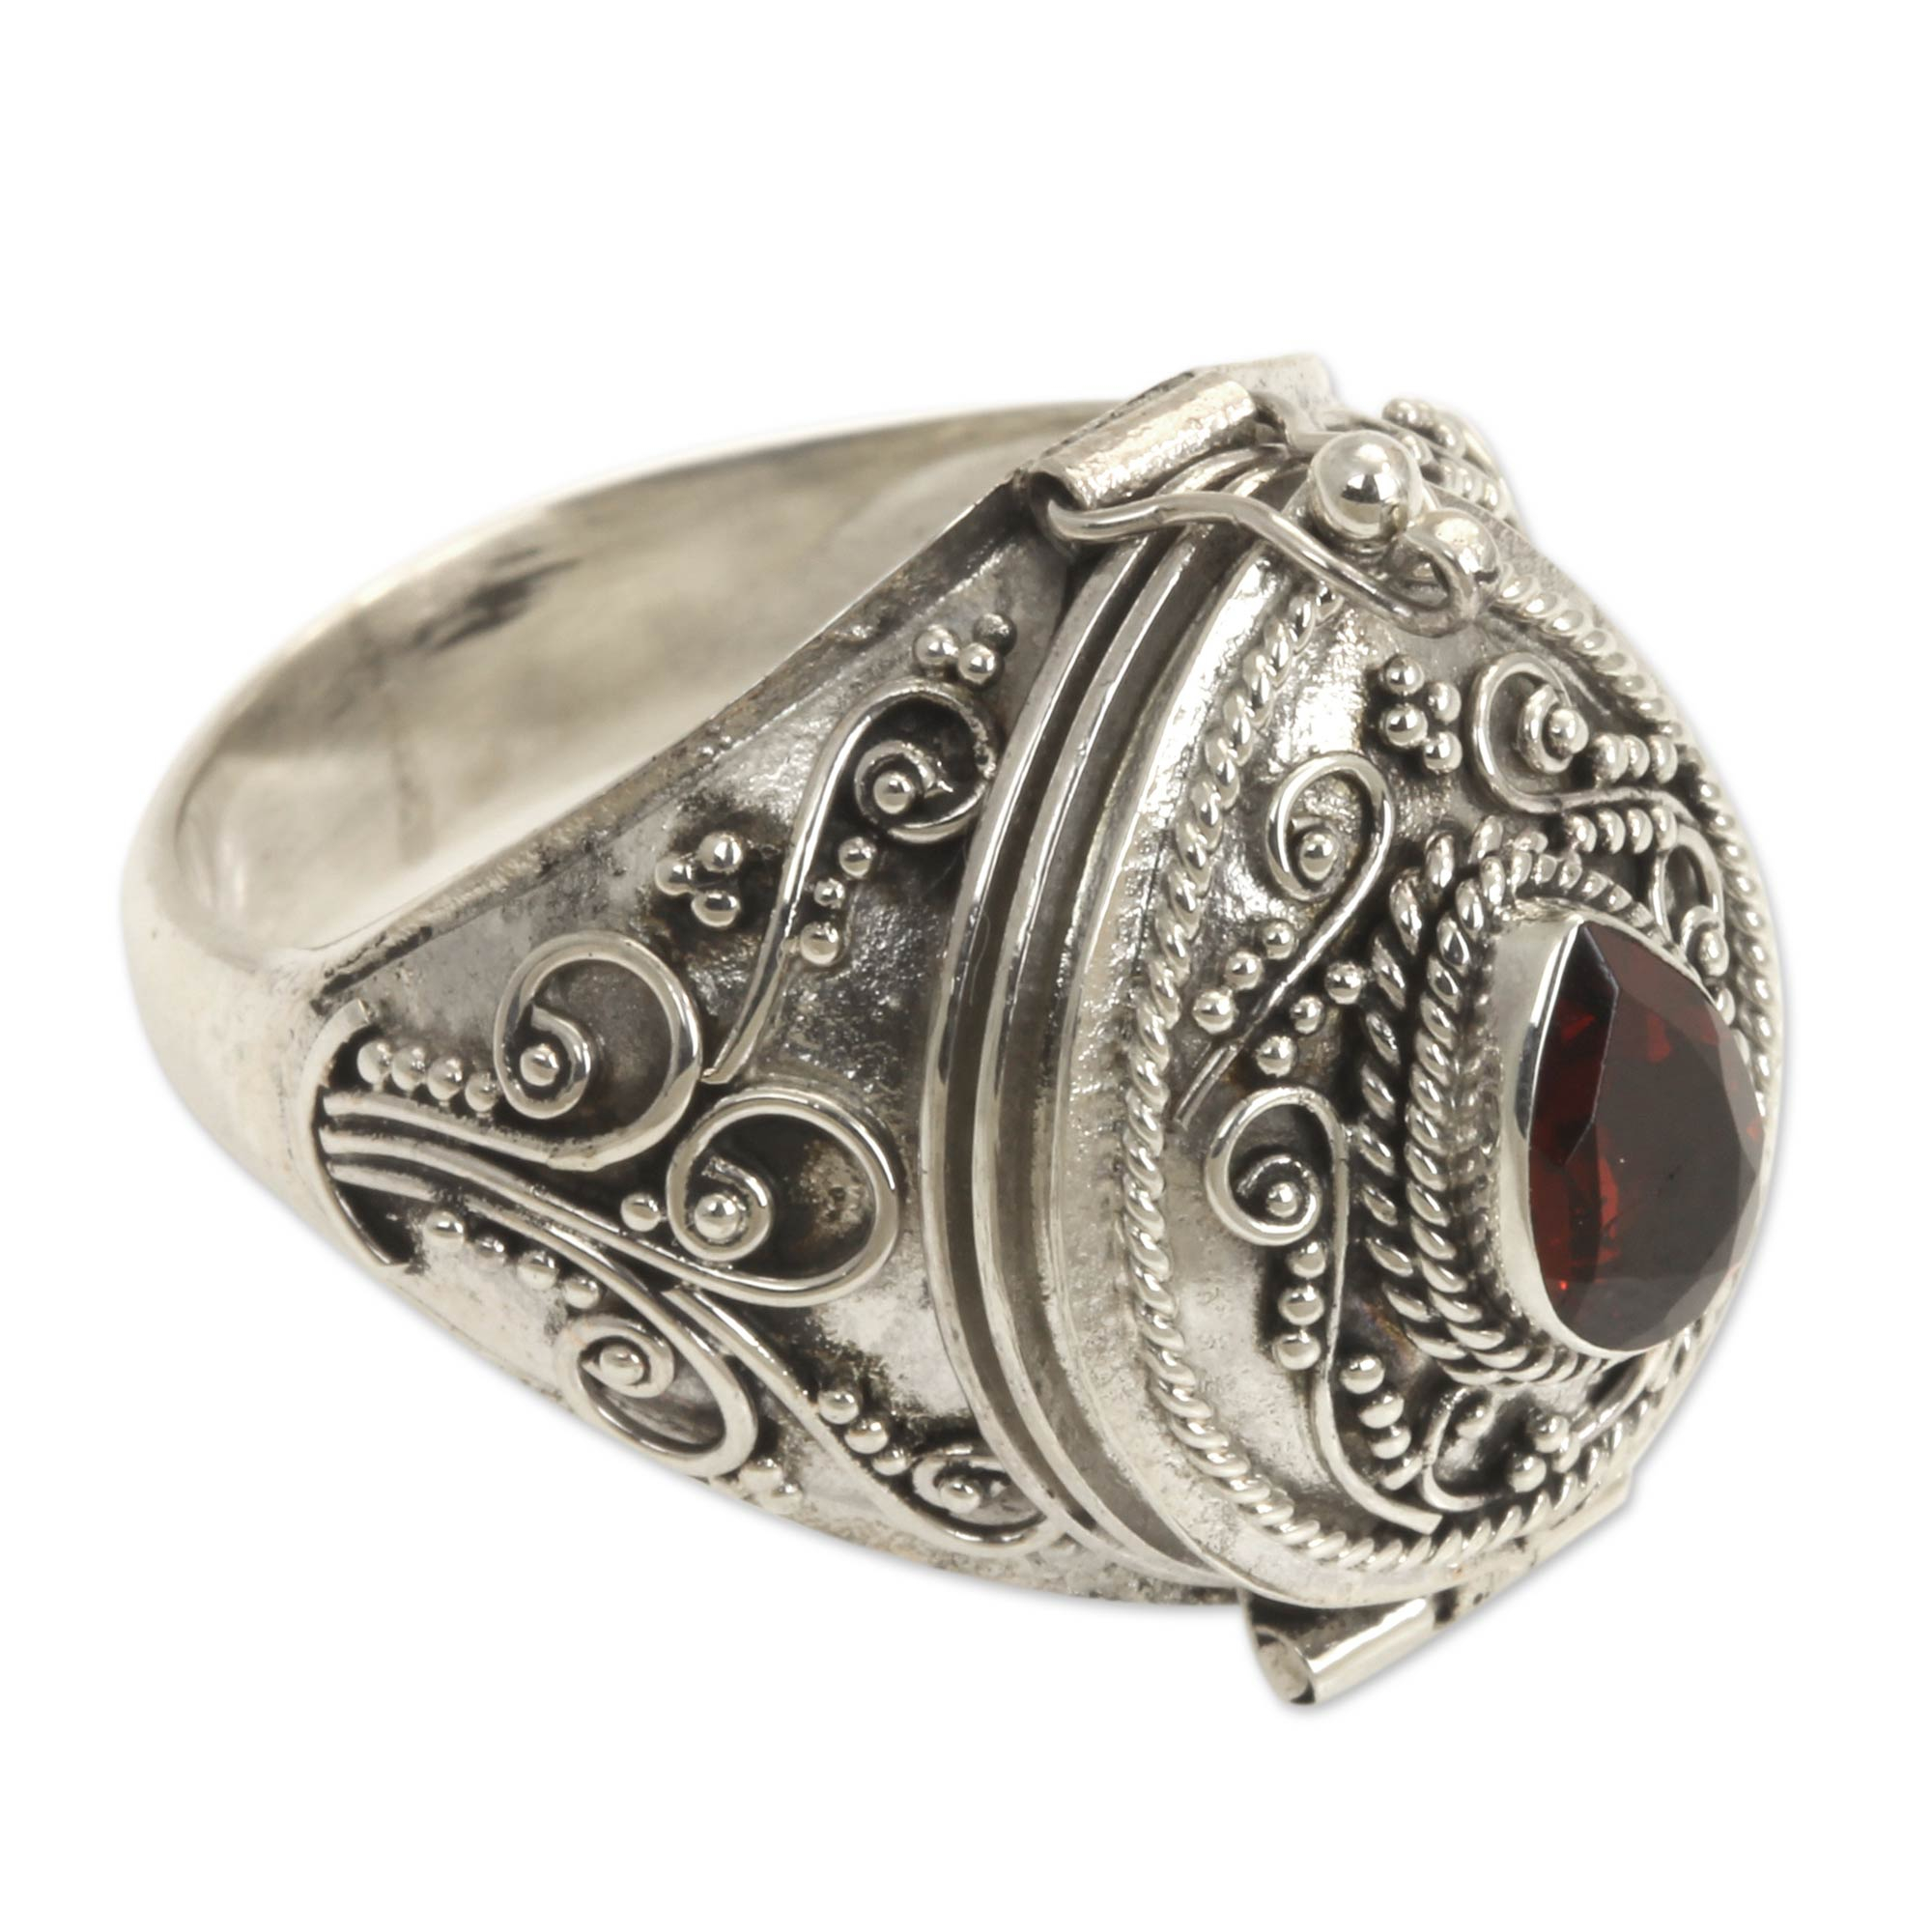 Handcrafted Sterling Silver and Garnet Locket Ring - Secret Love | NOVICA